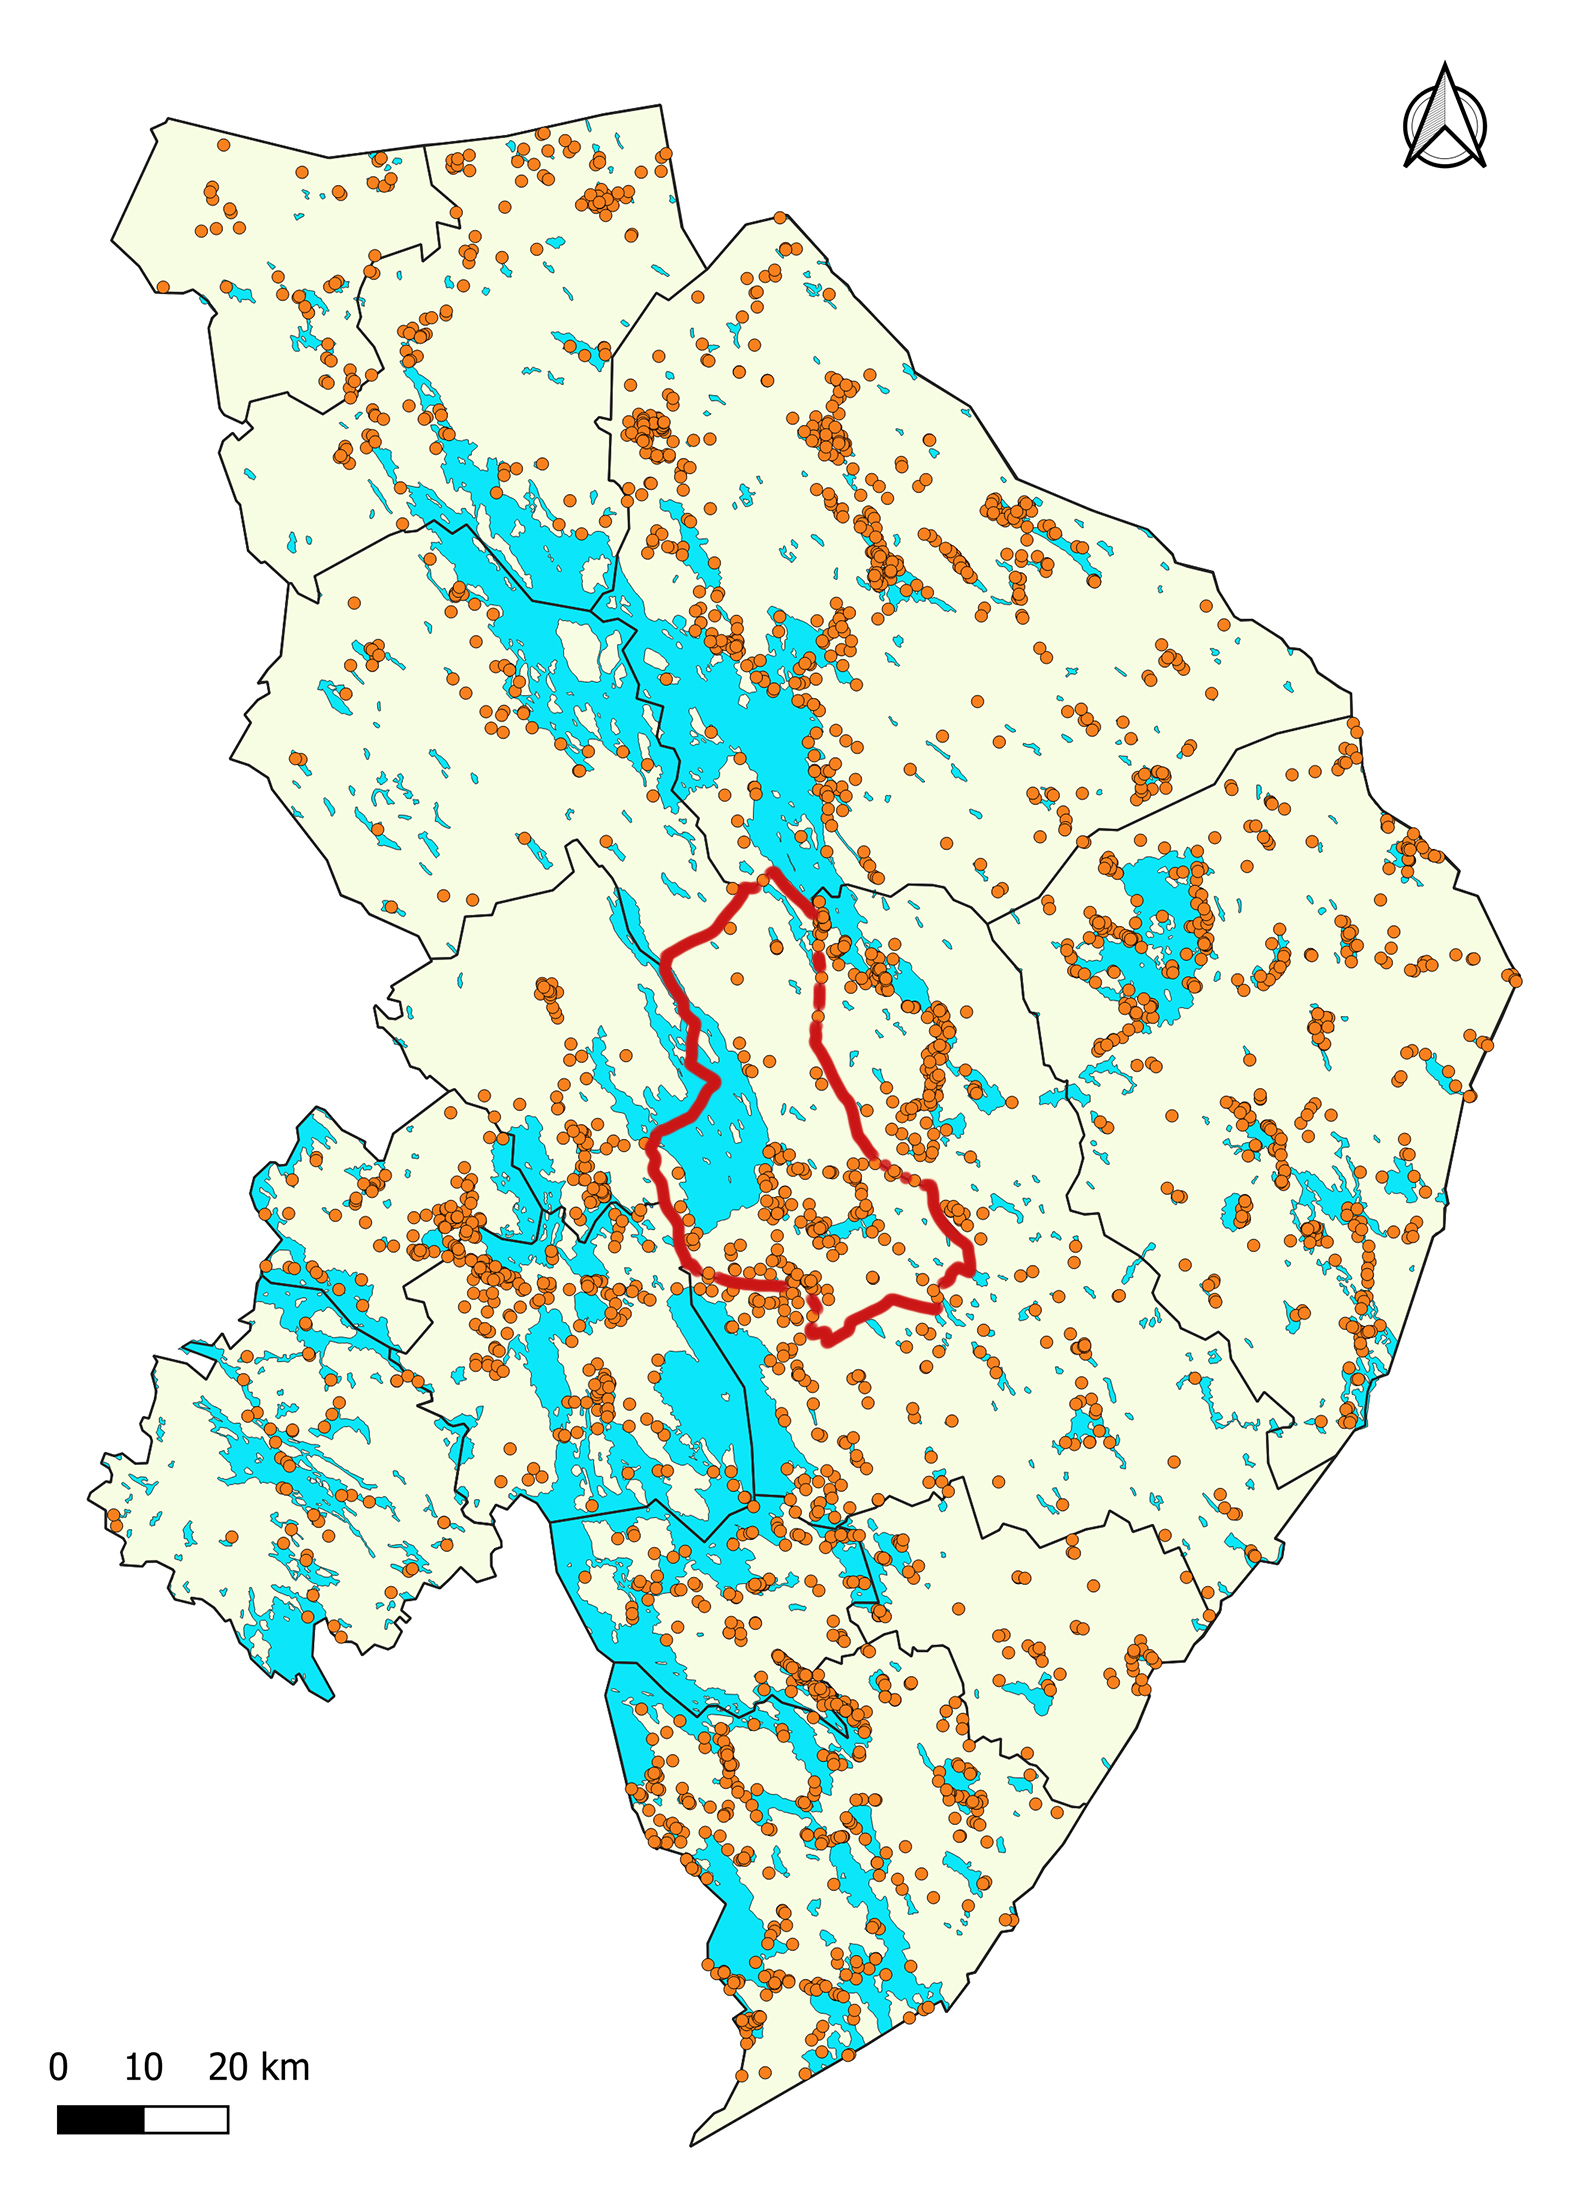 Kontiolahden alueen kiinteät muinaisjäännökset. Kartassa Joensuun kunnan rajat on piirretty punaisella, muut kunnat näkyvät mustin rajoin. Oranssit pallot kertovat löydöspaikoista. Vesistöt on merkitty sinisellä.